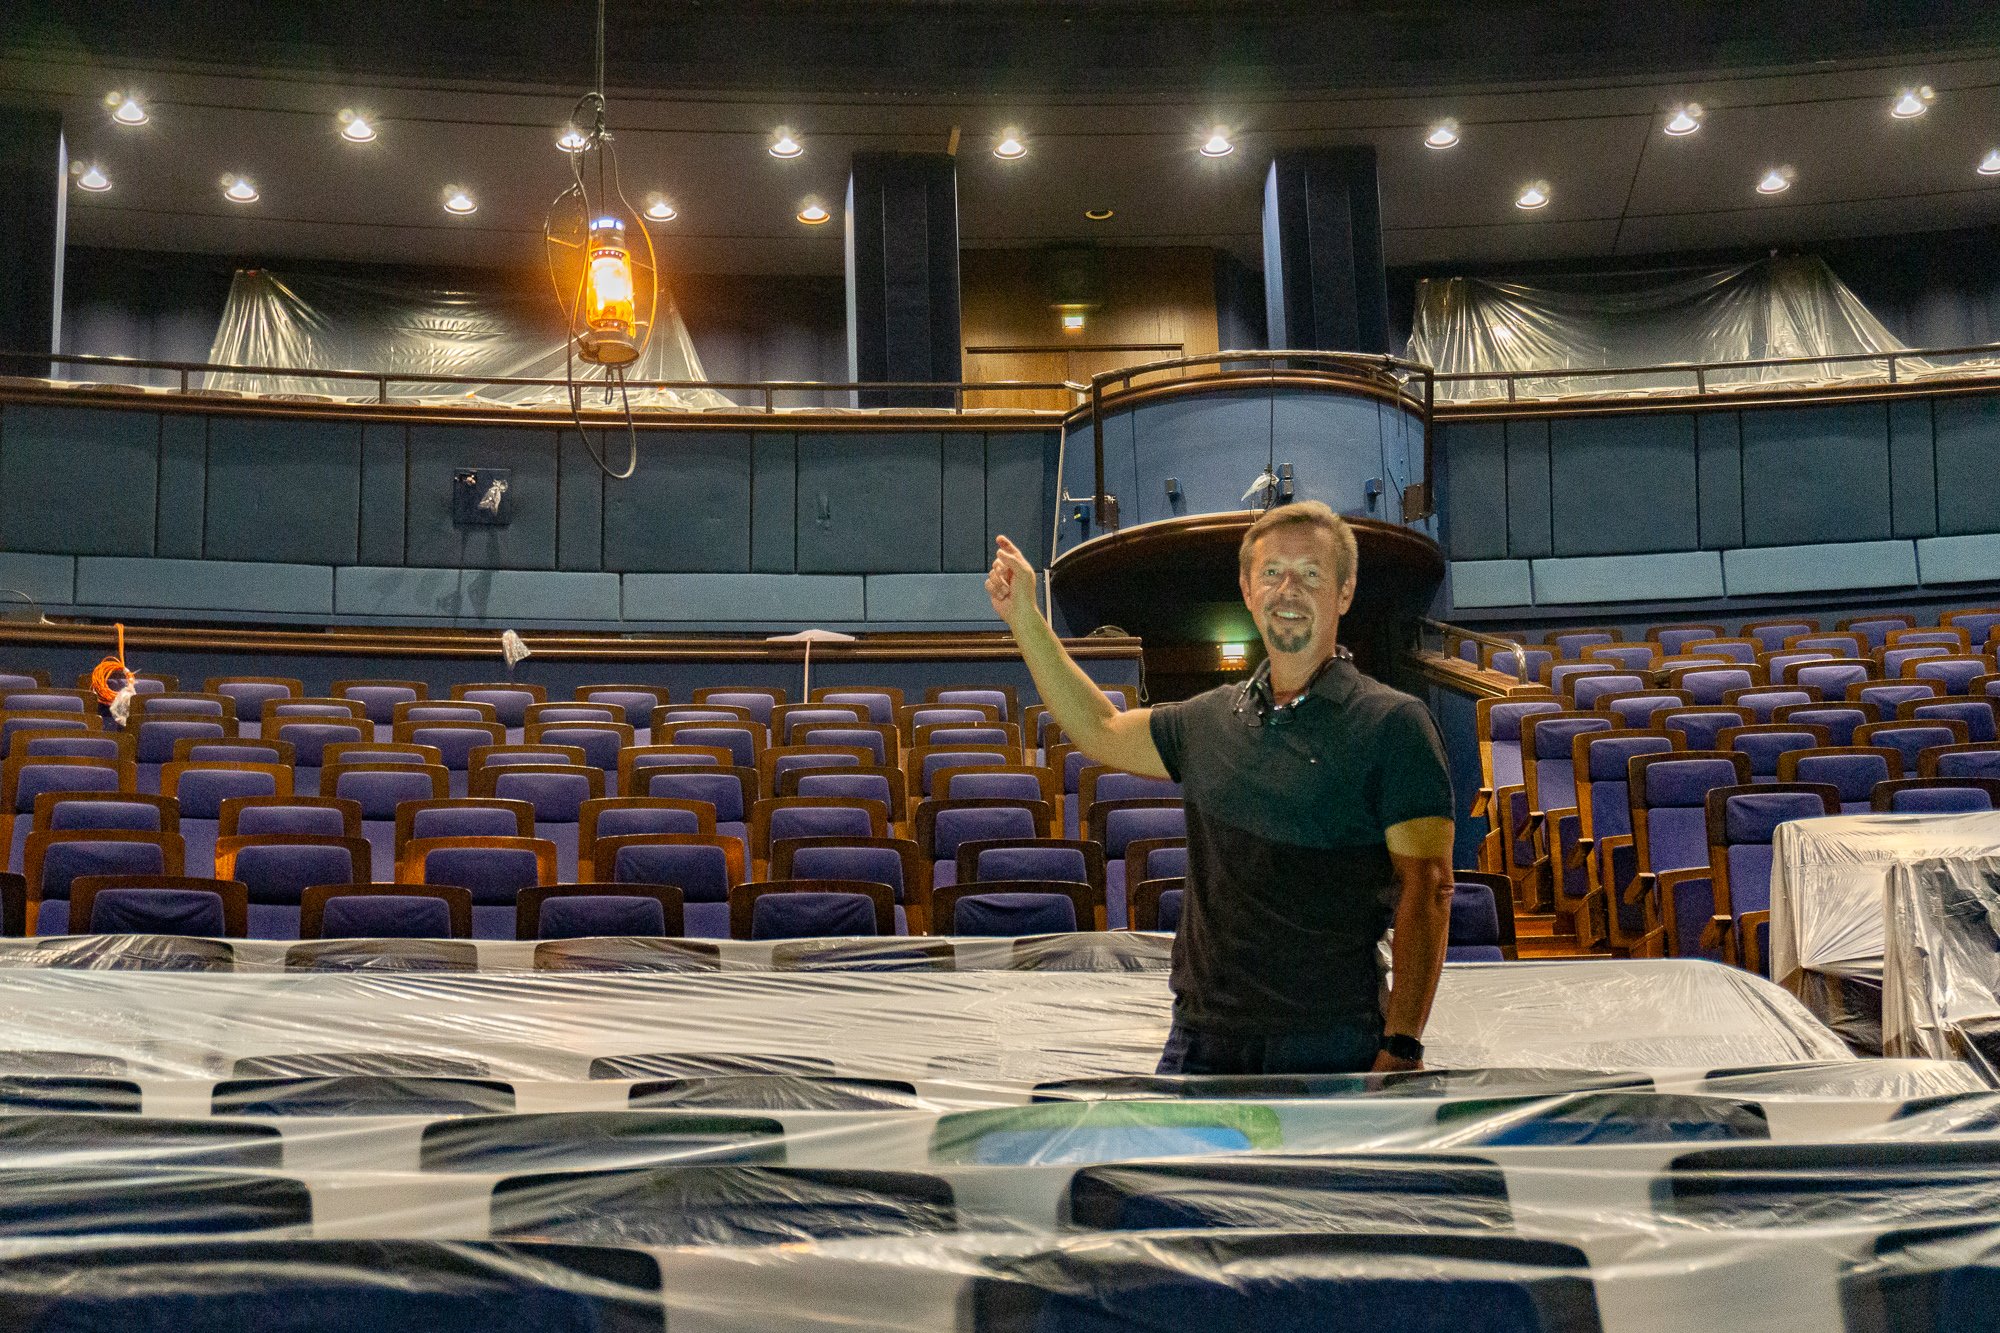 Andreas Stübler zeigt aufs "Geisterlicht". Das symbolisiert die Hoffnung, dass der Bühnenbetrieb bald weitergeht. Foto: Max Müller